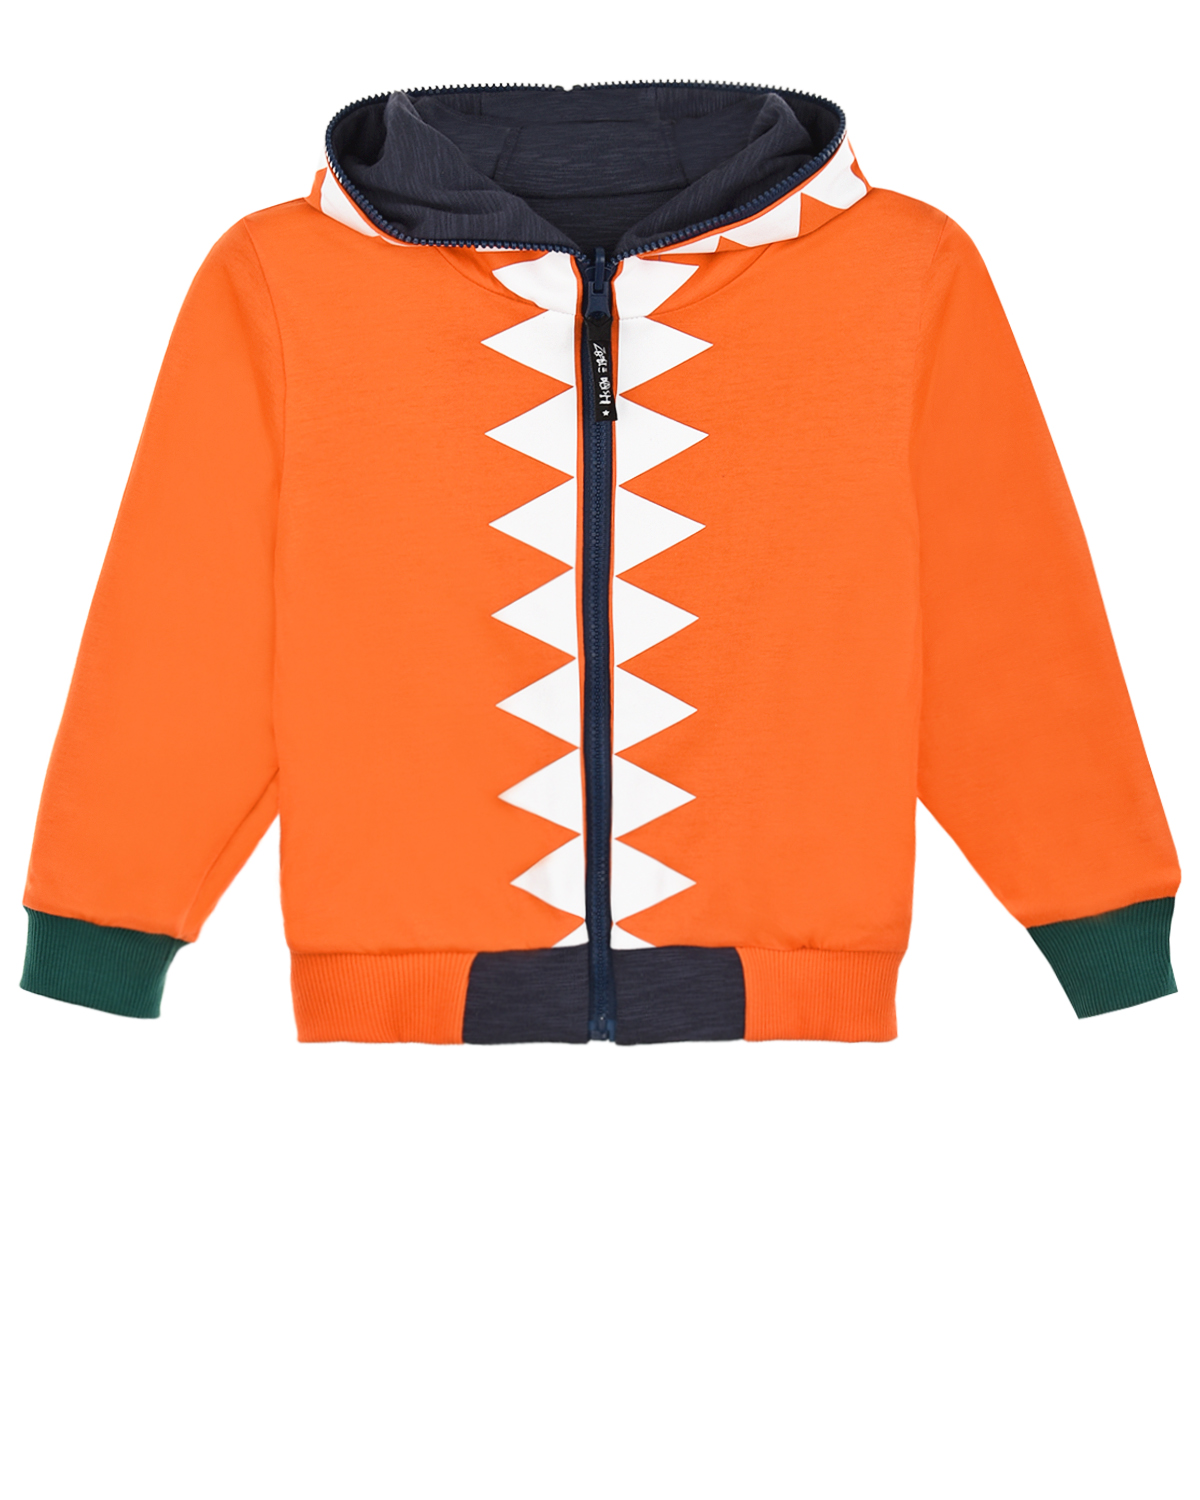 Двухсторонняя спортивная куртка Zombie Dash детская, размер 104, цвет мультиколор - фото 2